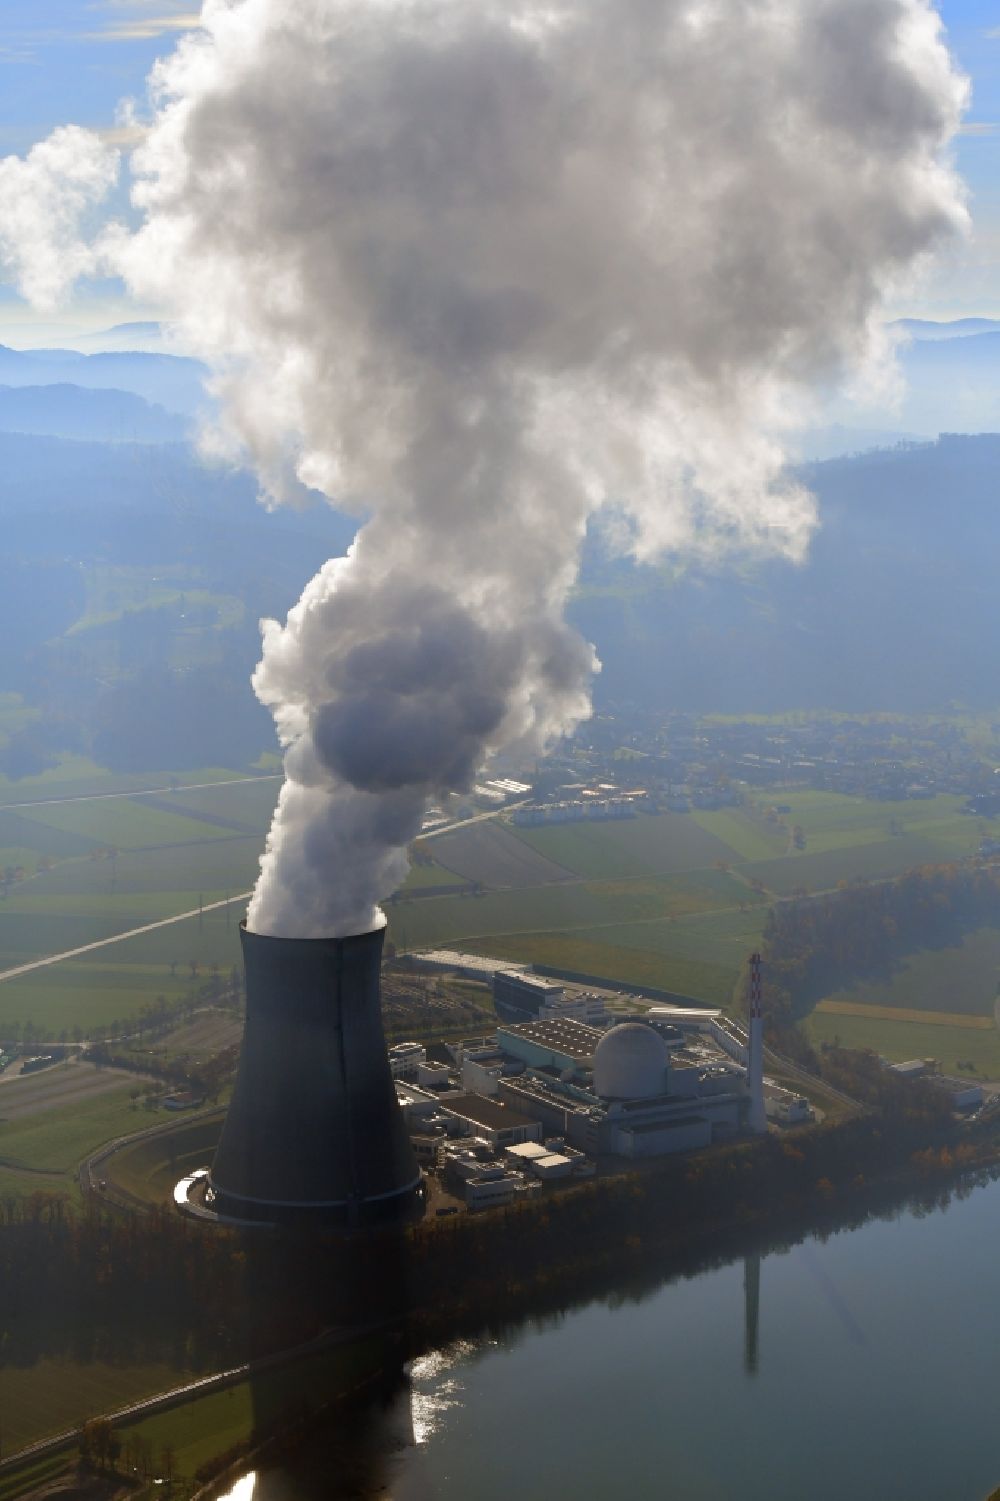 Leibstadt von oben - Reaktorblock und Anlagen des AKW - KKW Kernkraftwerk KKL in Leibstadt am Rhein im Kanton Aargau, Schweiz